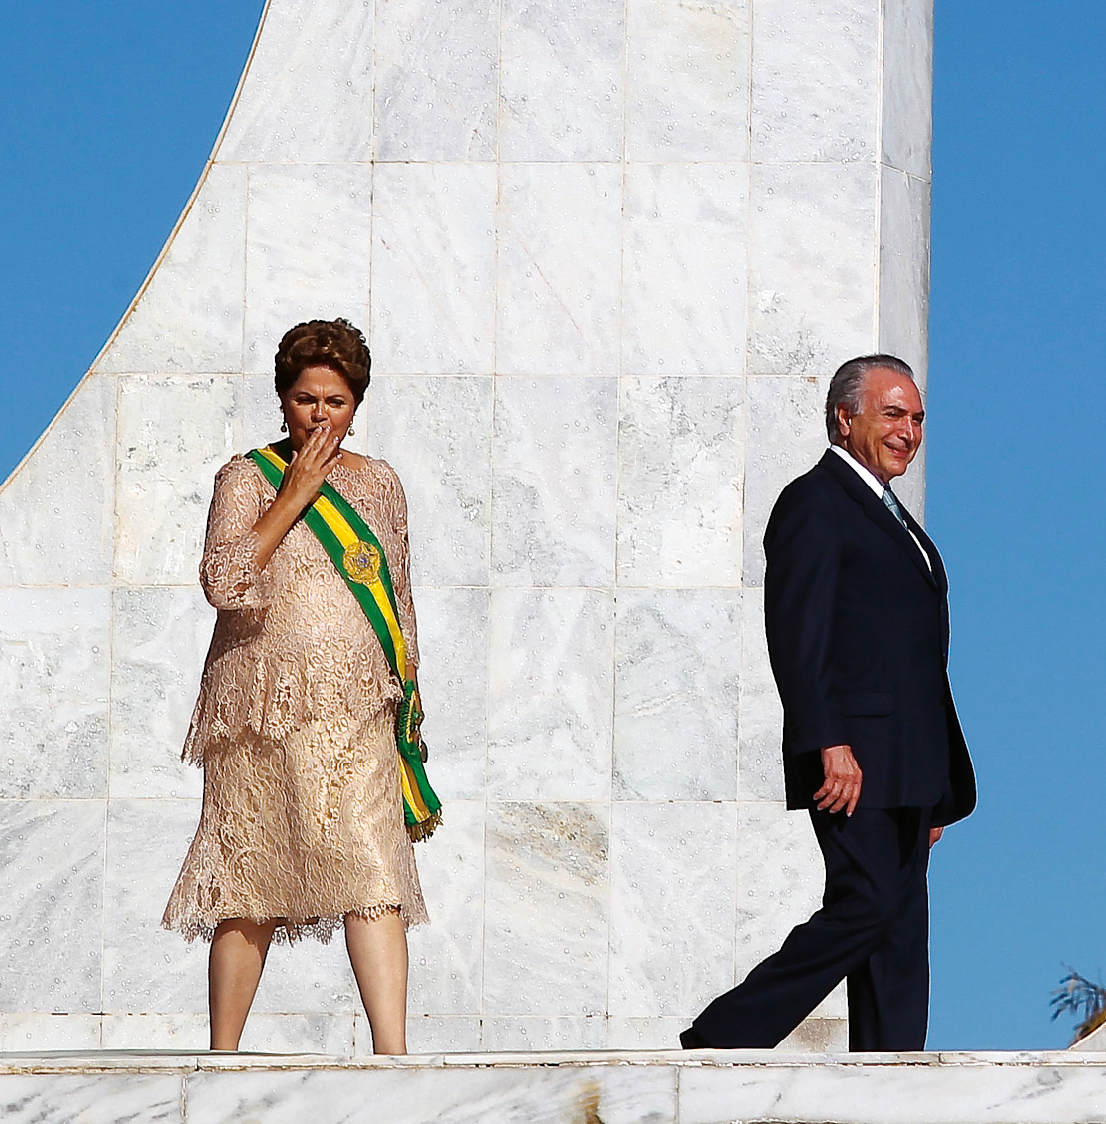 Fotografia. Dilma Rousseff, mulher de cabelos curtos e castanhos, usando um vestido largo e a faixa presidencial. Está com uma das mãos à frente da boca. Ao seu lado, de perfil, Michel temer, homem de cabelos grisalhos. Usa terno escuro.